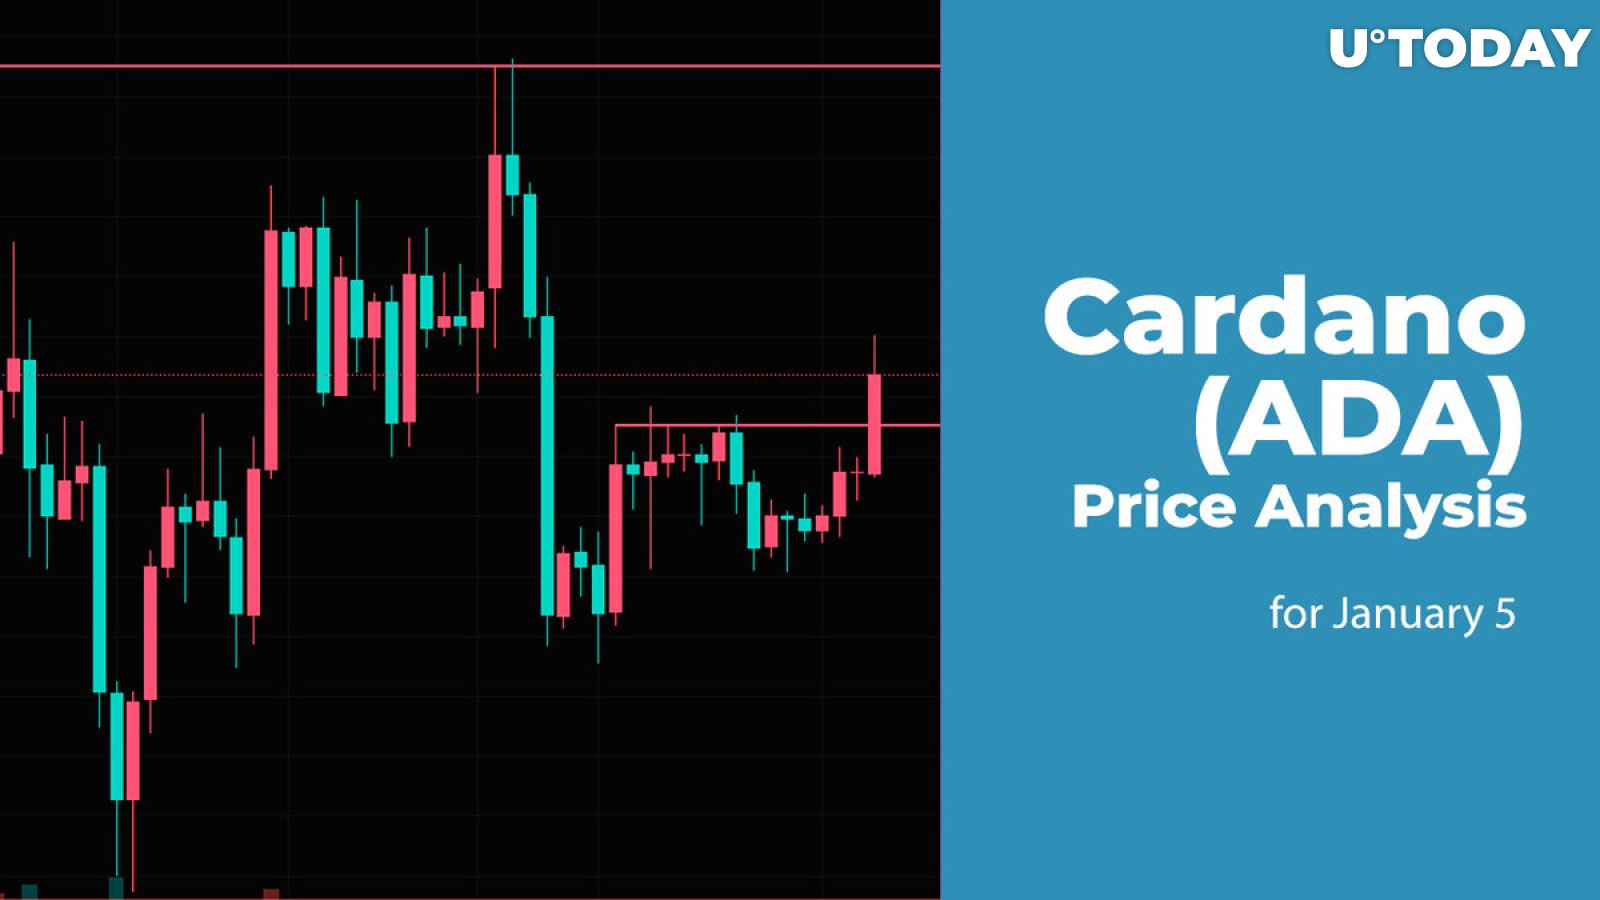 Cardano (ADA) Price Analysis for January 5